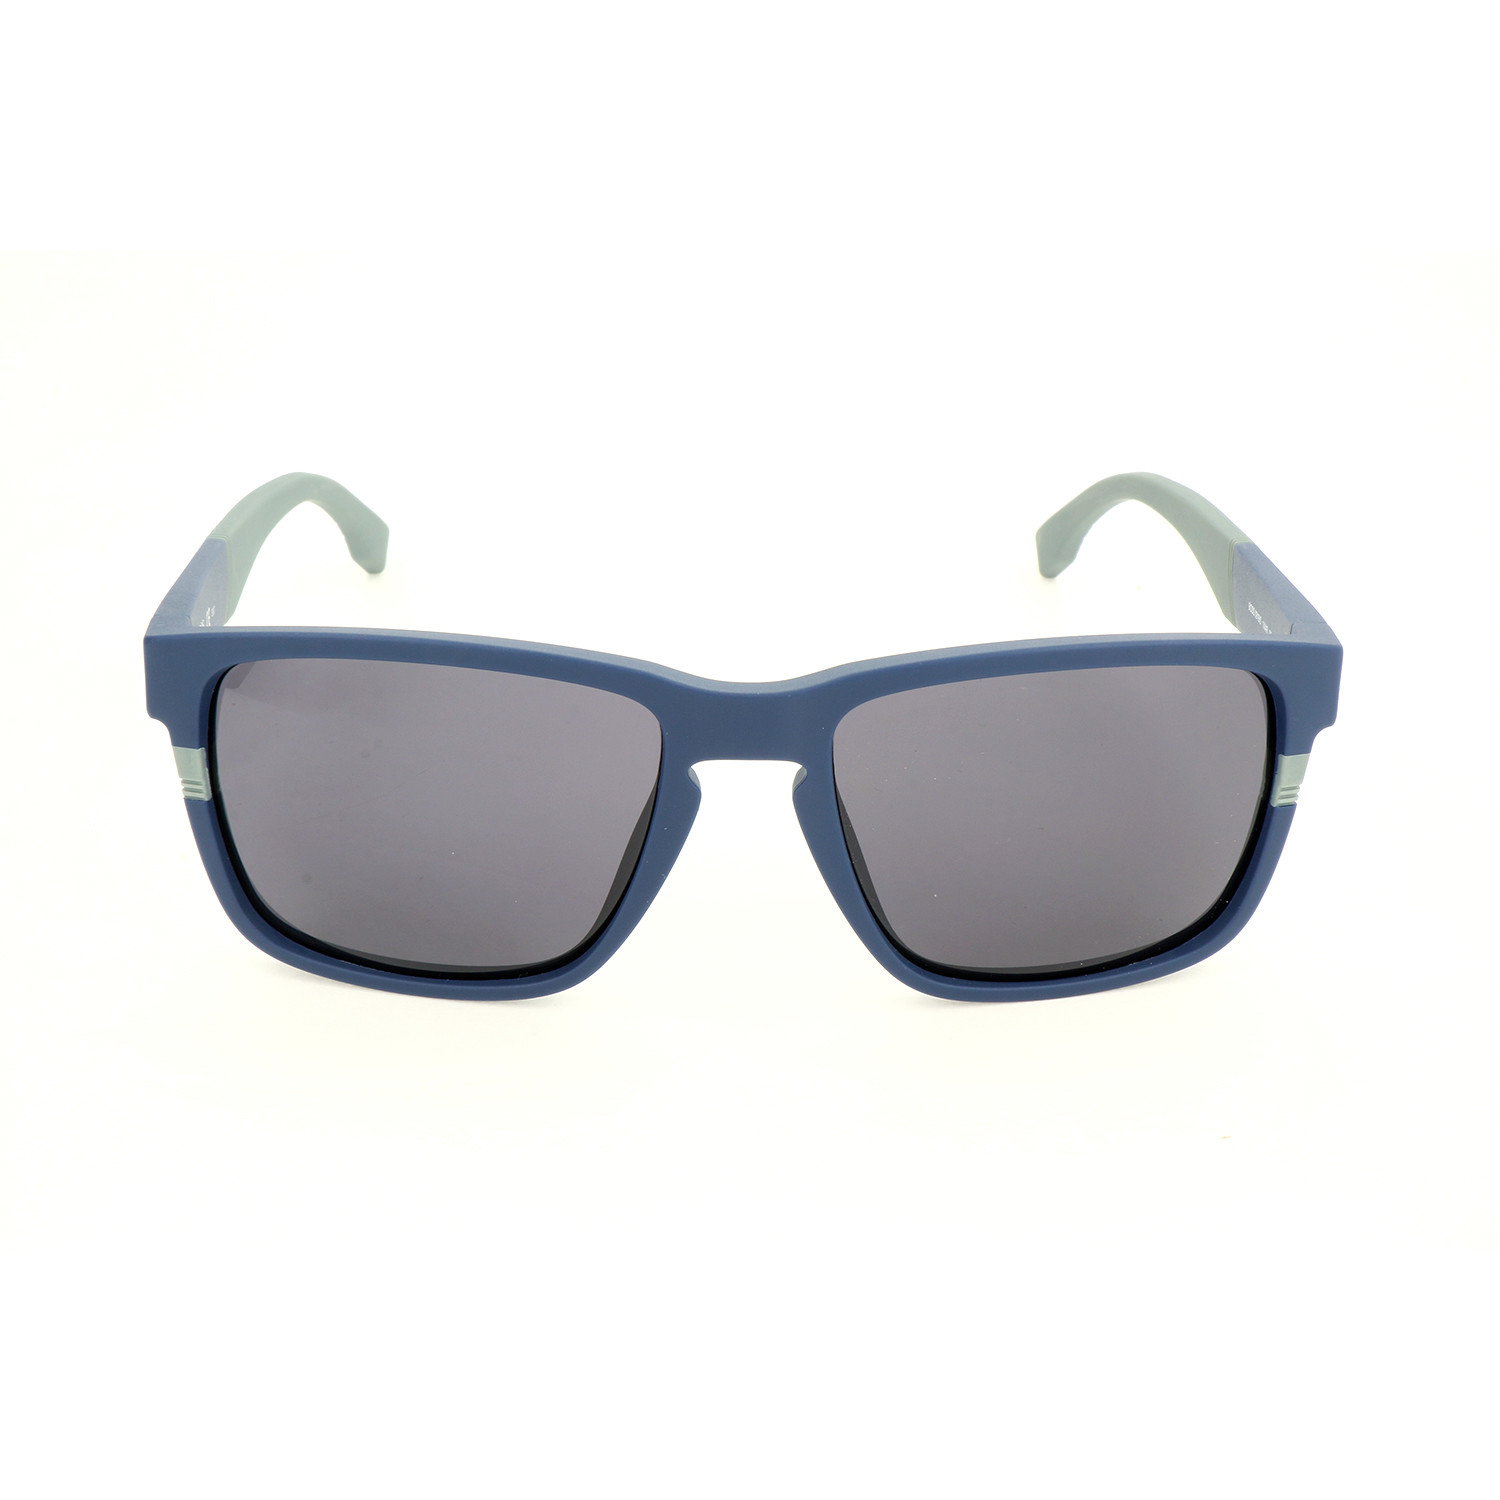 Men's 0916 Sunglasses // Matte Blue + Gray - Hugo Boss - Touch of Modern